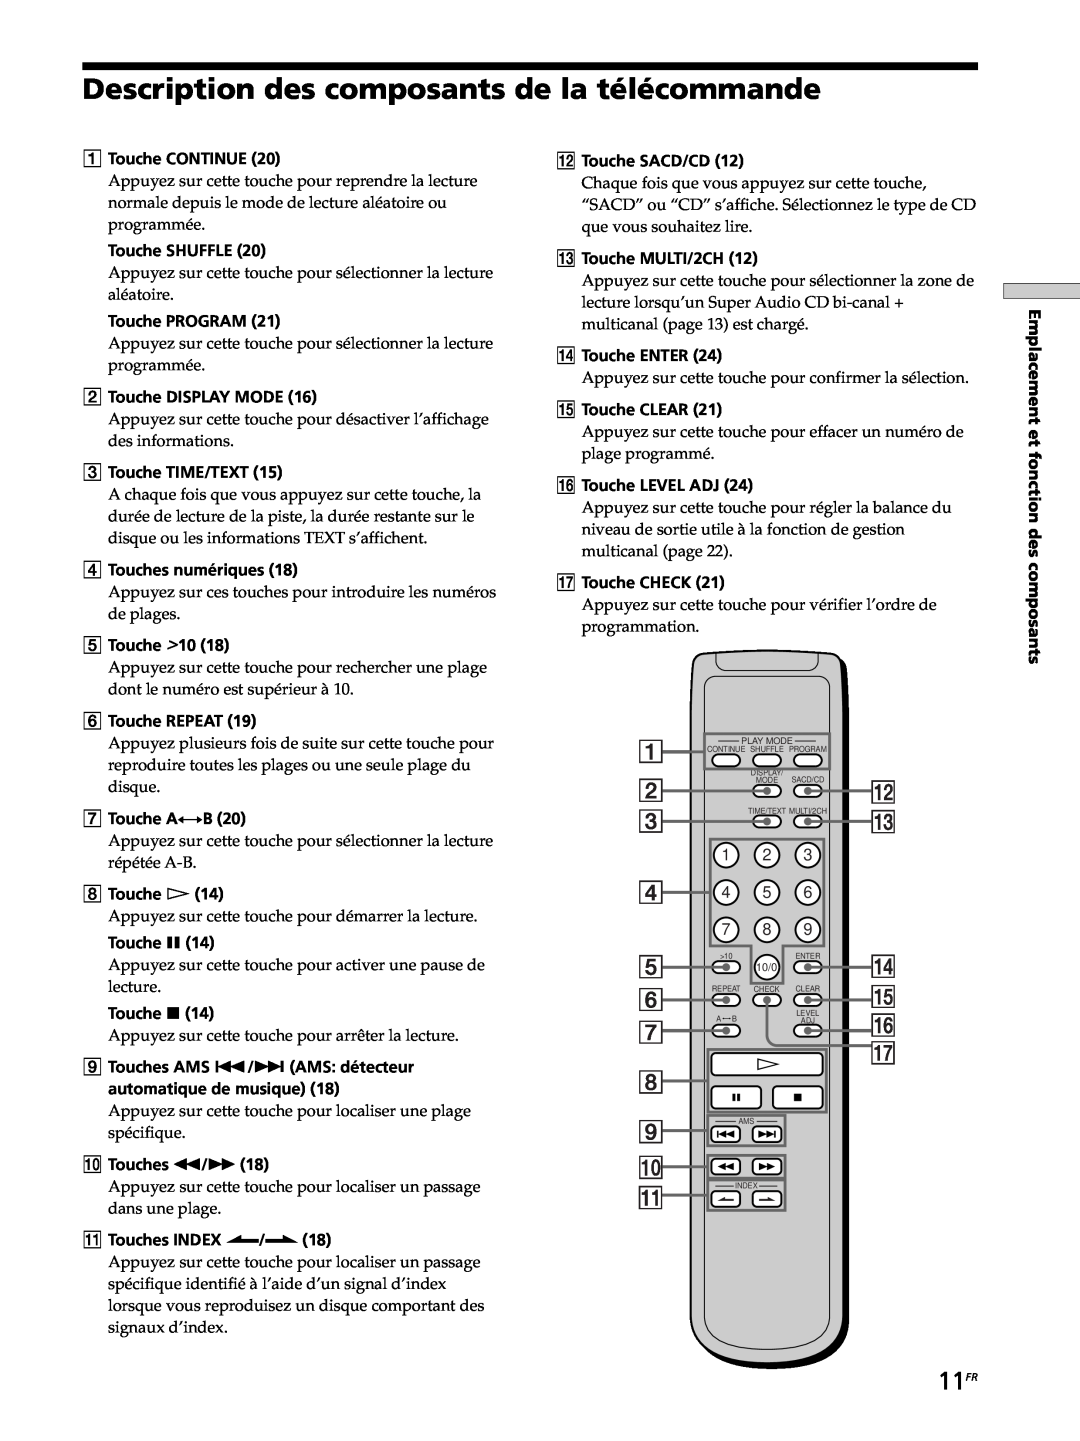 Sony SCD-XB770 operating instructions Description des composants de la télécommande, 11FR 